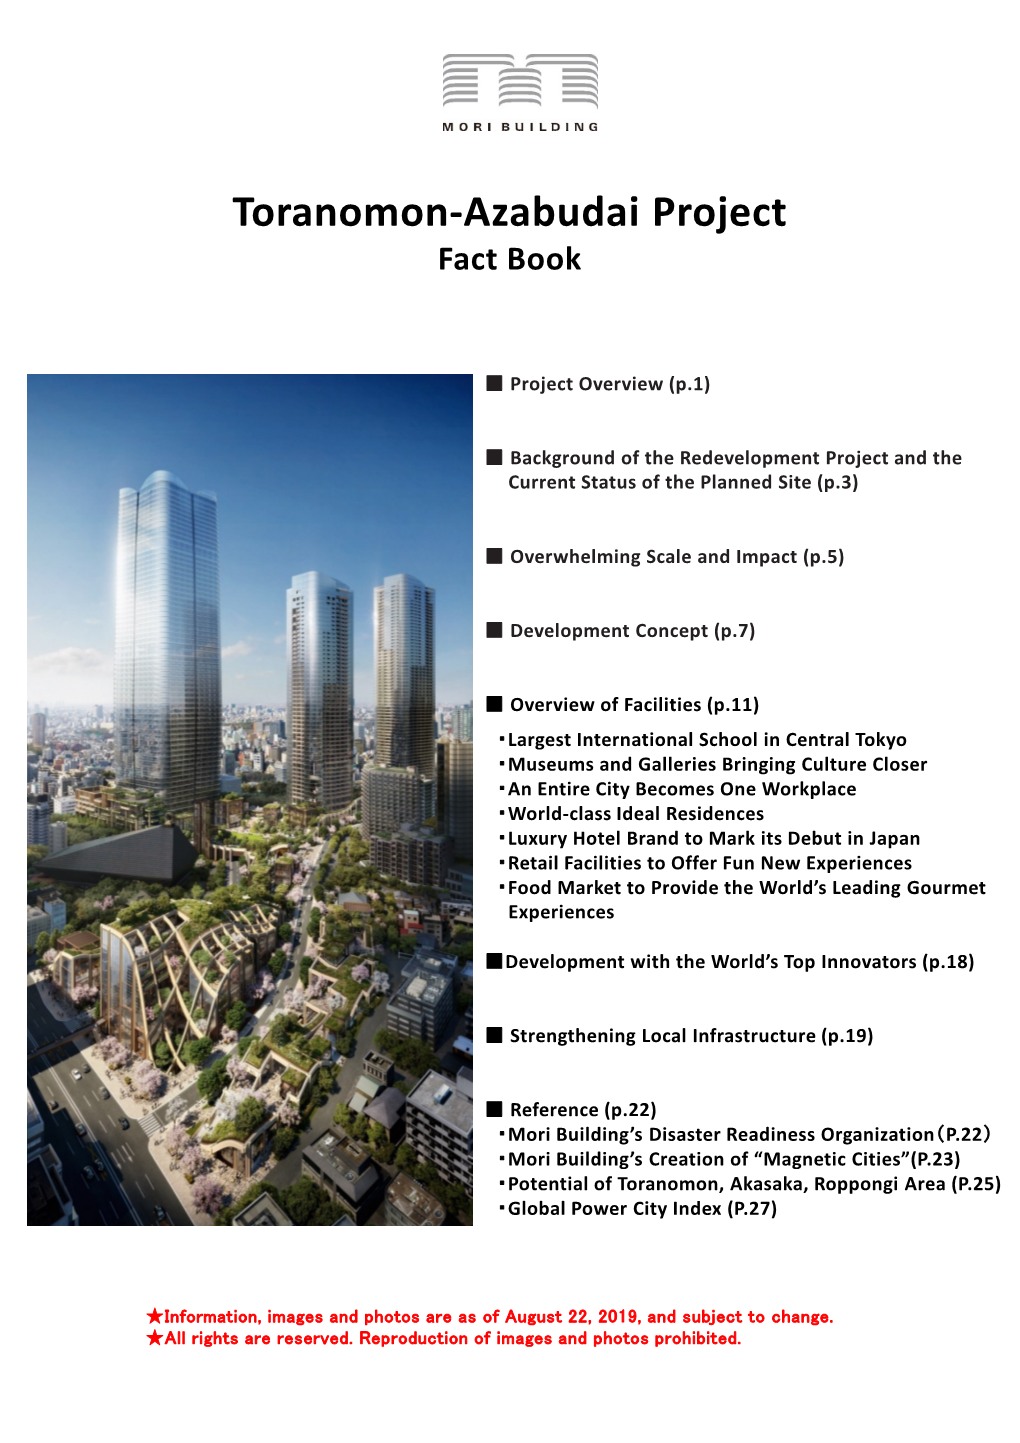 Toranomon-Azabudai Project Fact Book